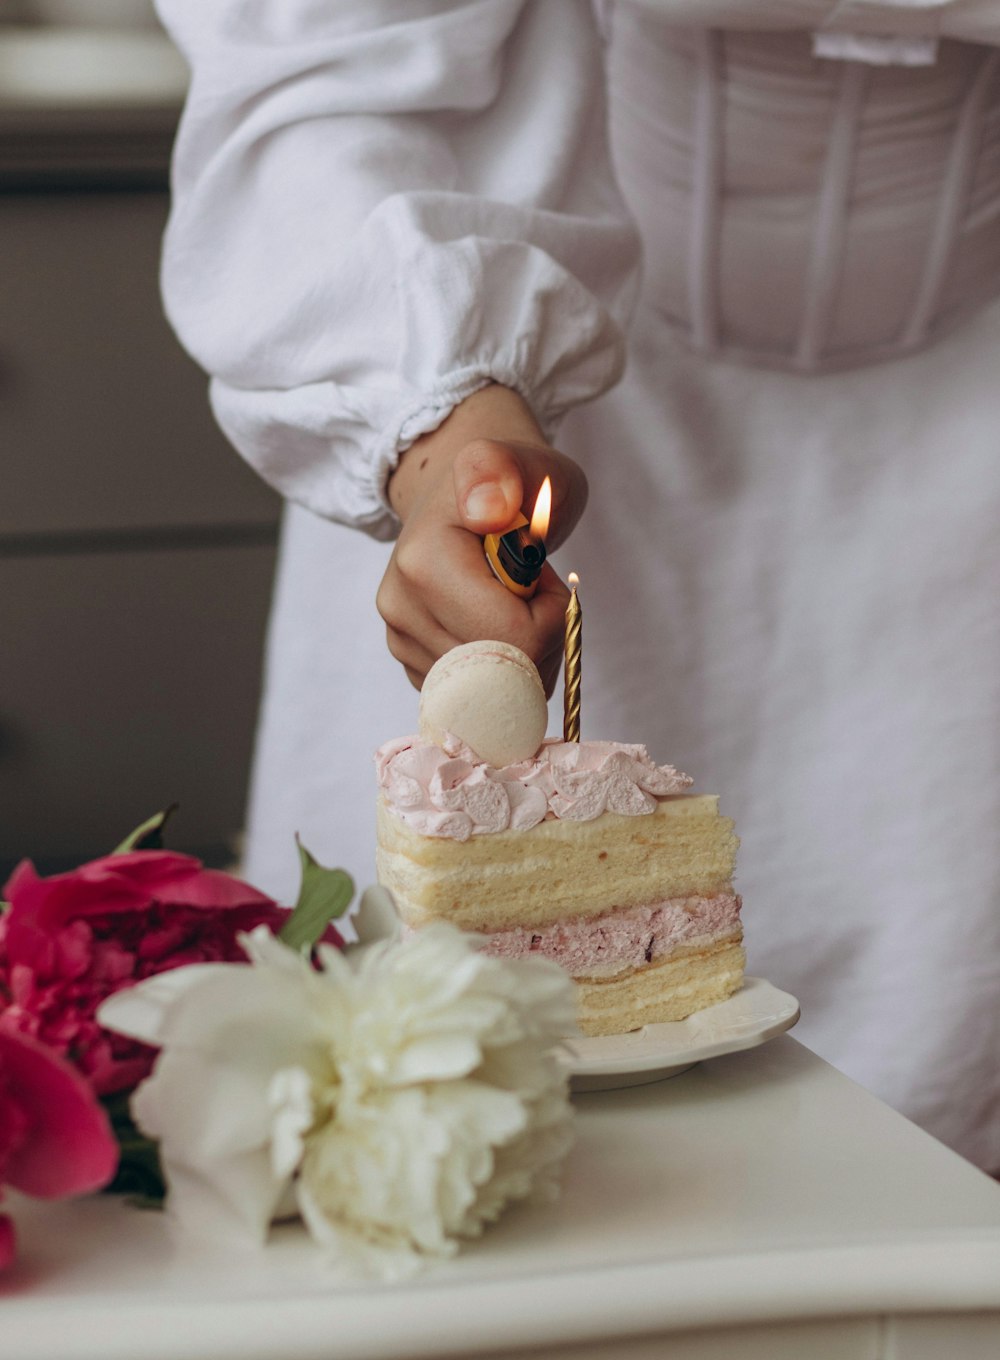 uma pessoa acendendo uma vela em um bolo